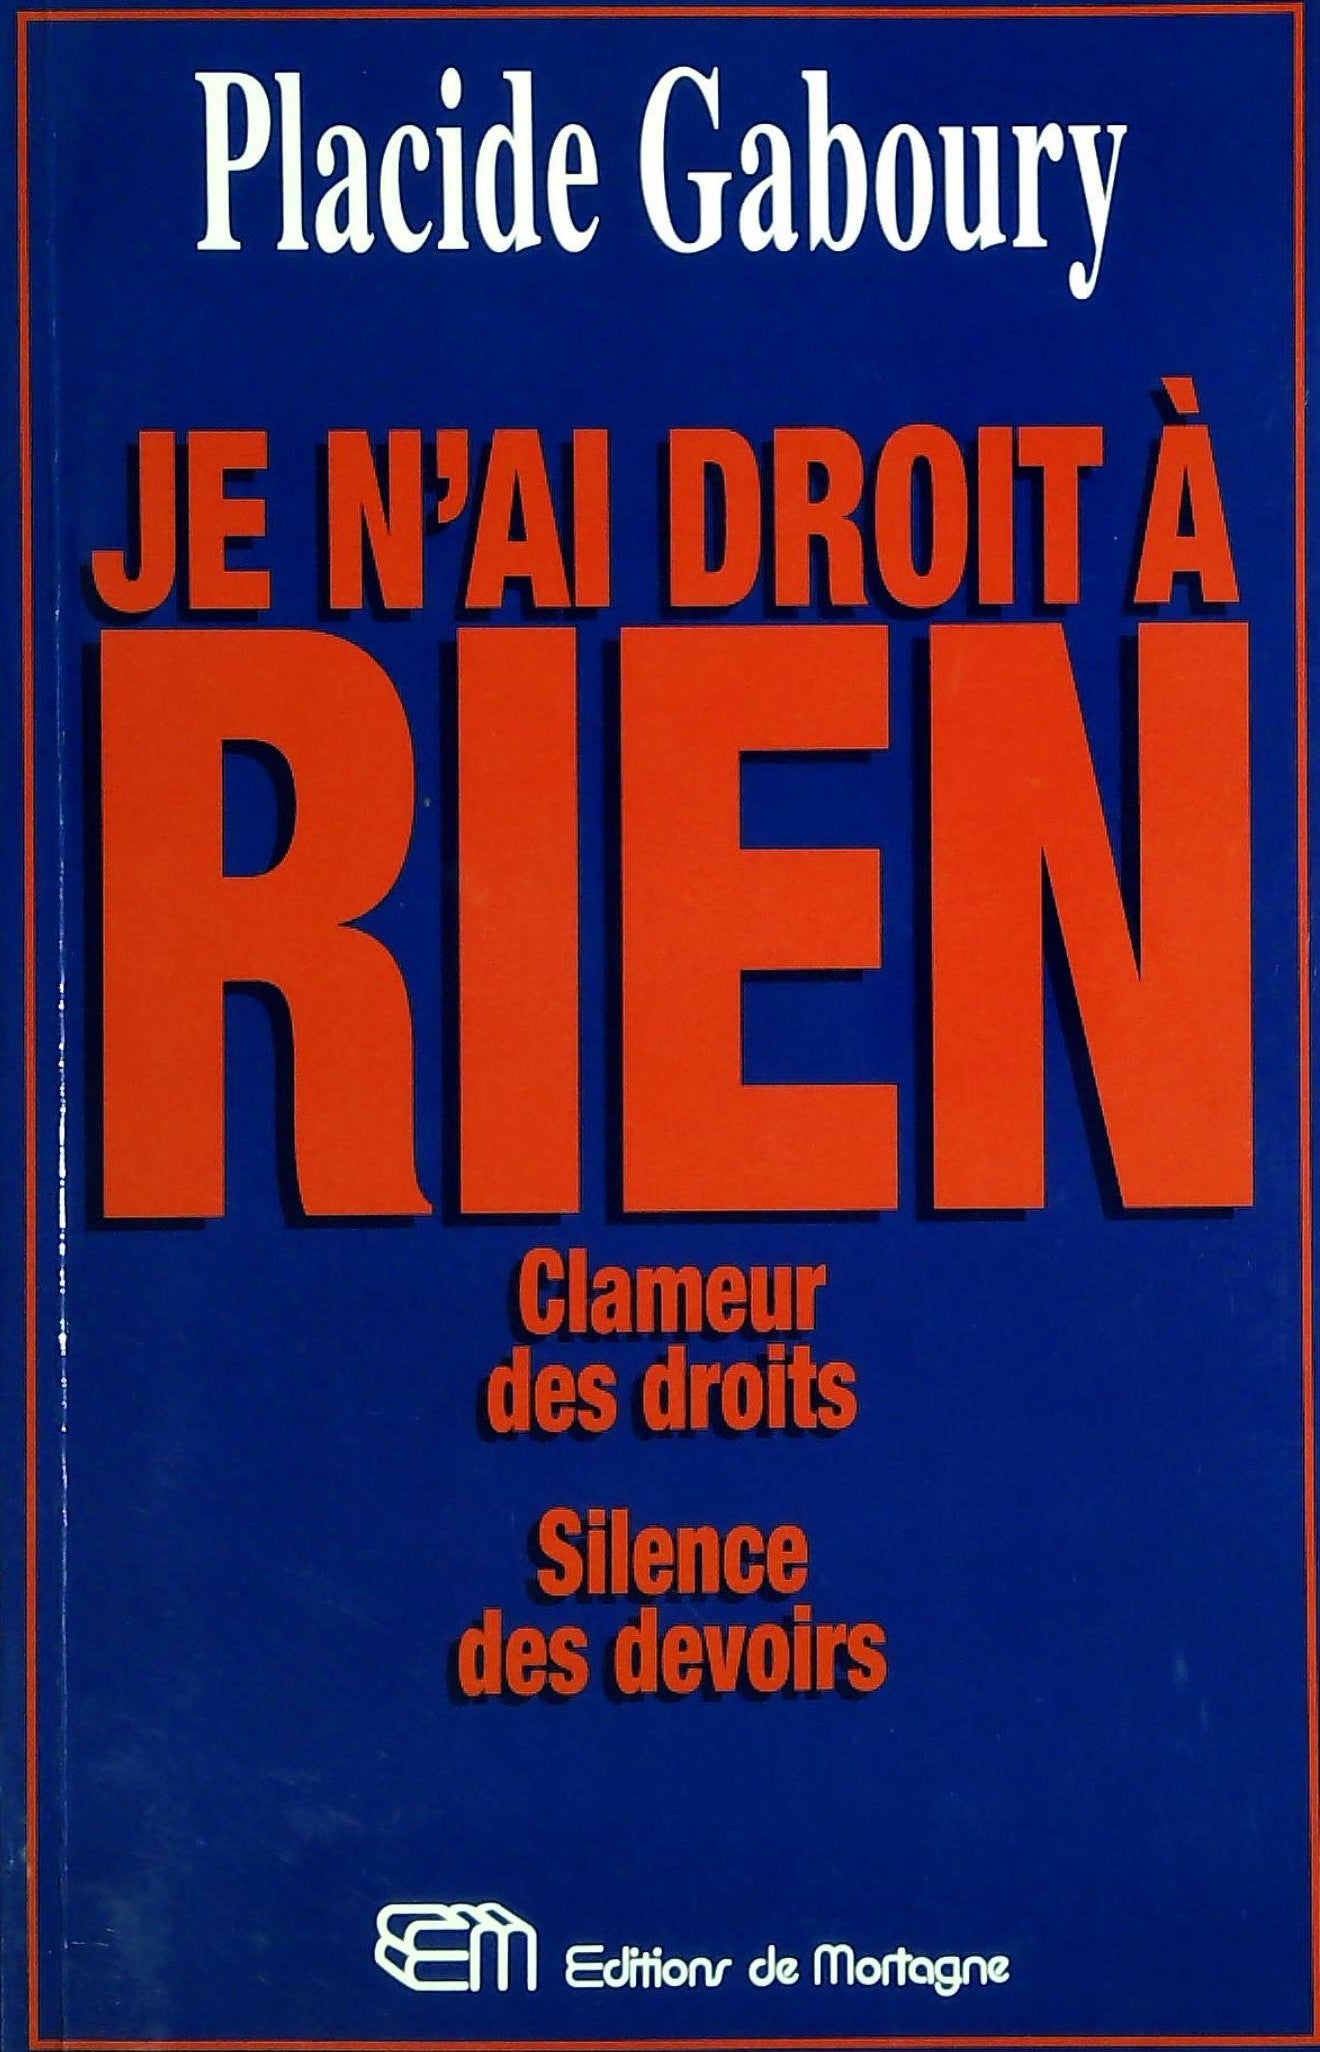 Livre ISBN 2890748456 Je n'ai droit à rien : Clameur des droits, silence des devoirs (Placide Gaboury)